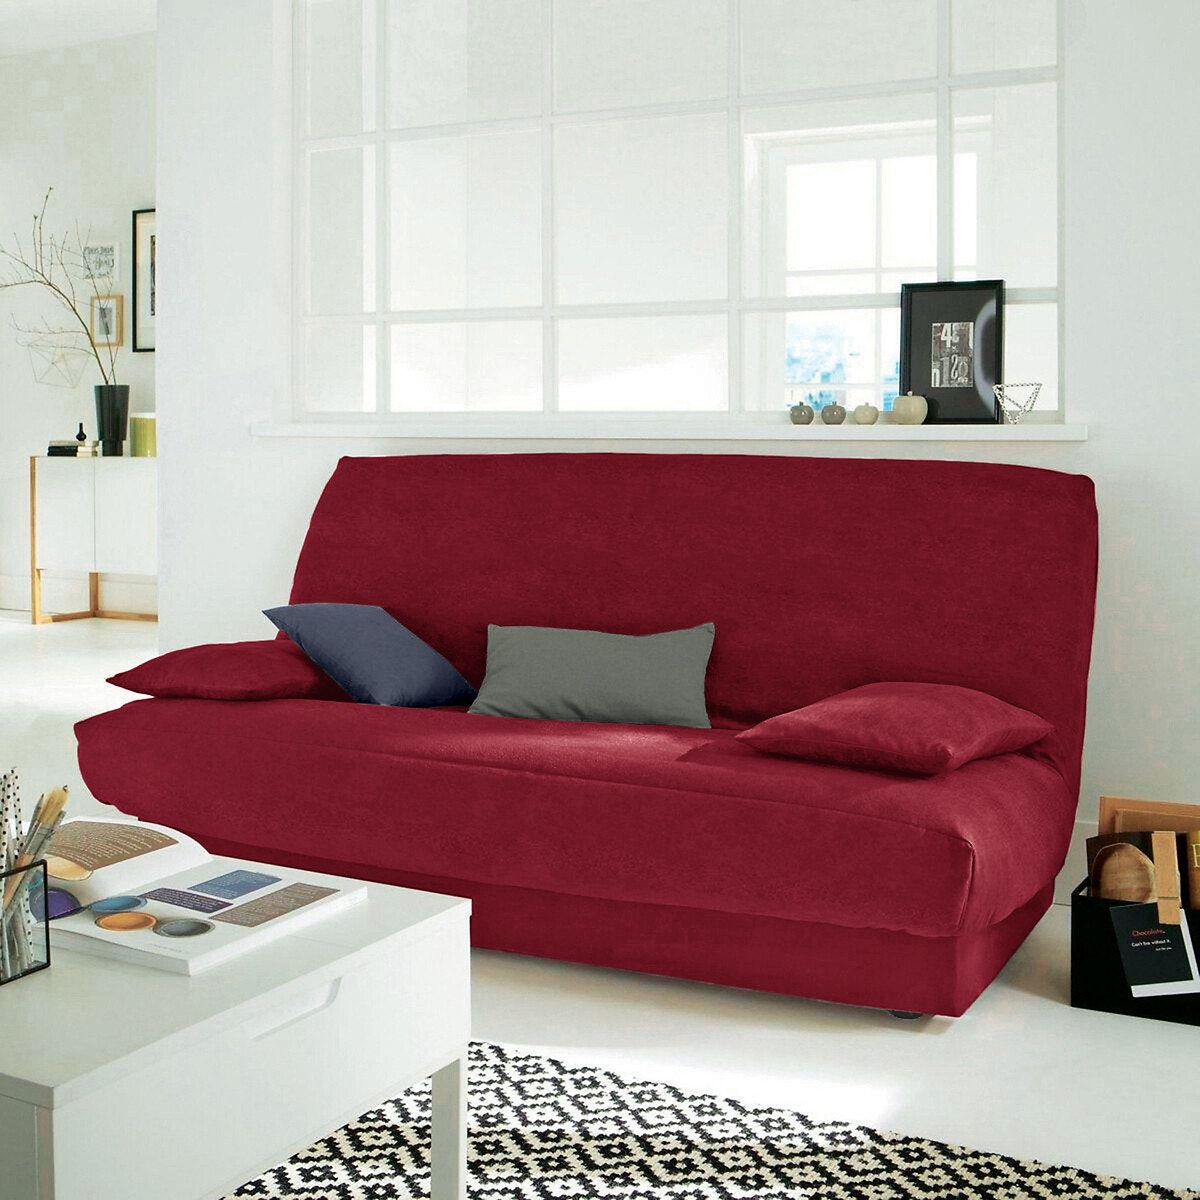 Σπίτι > Λευκά είδη > Ύφασμα, διακόσμηση > Καλύμματα καναπέ, καρέκλας > Καλύμματα για πτυσσόμενο καναπέ clic-clac, BZ Κάλυμμα από σουετίνα για πτυσσόμενο καναπέ clic-clac One size